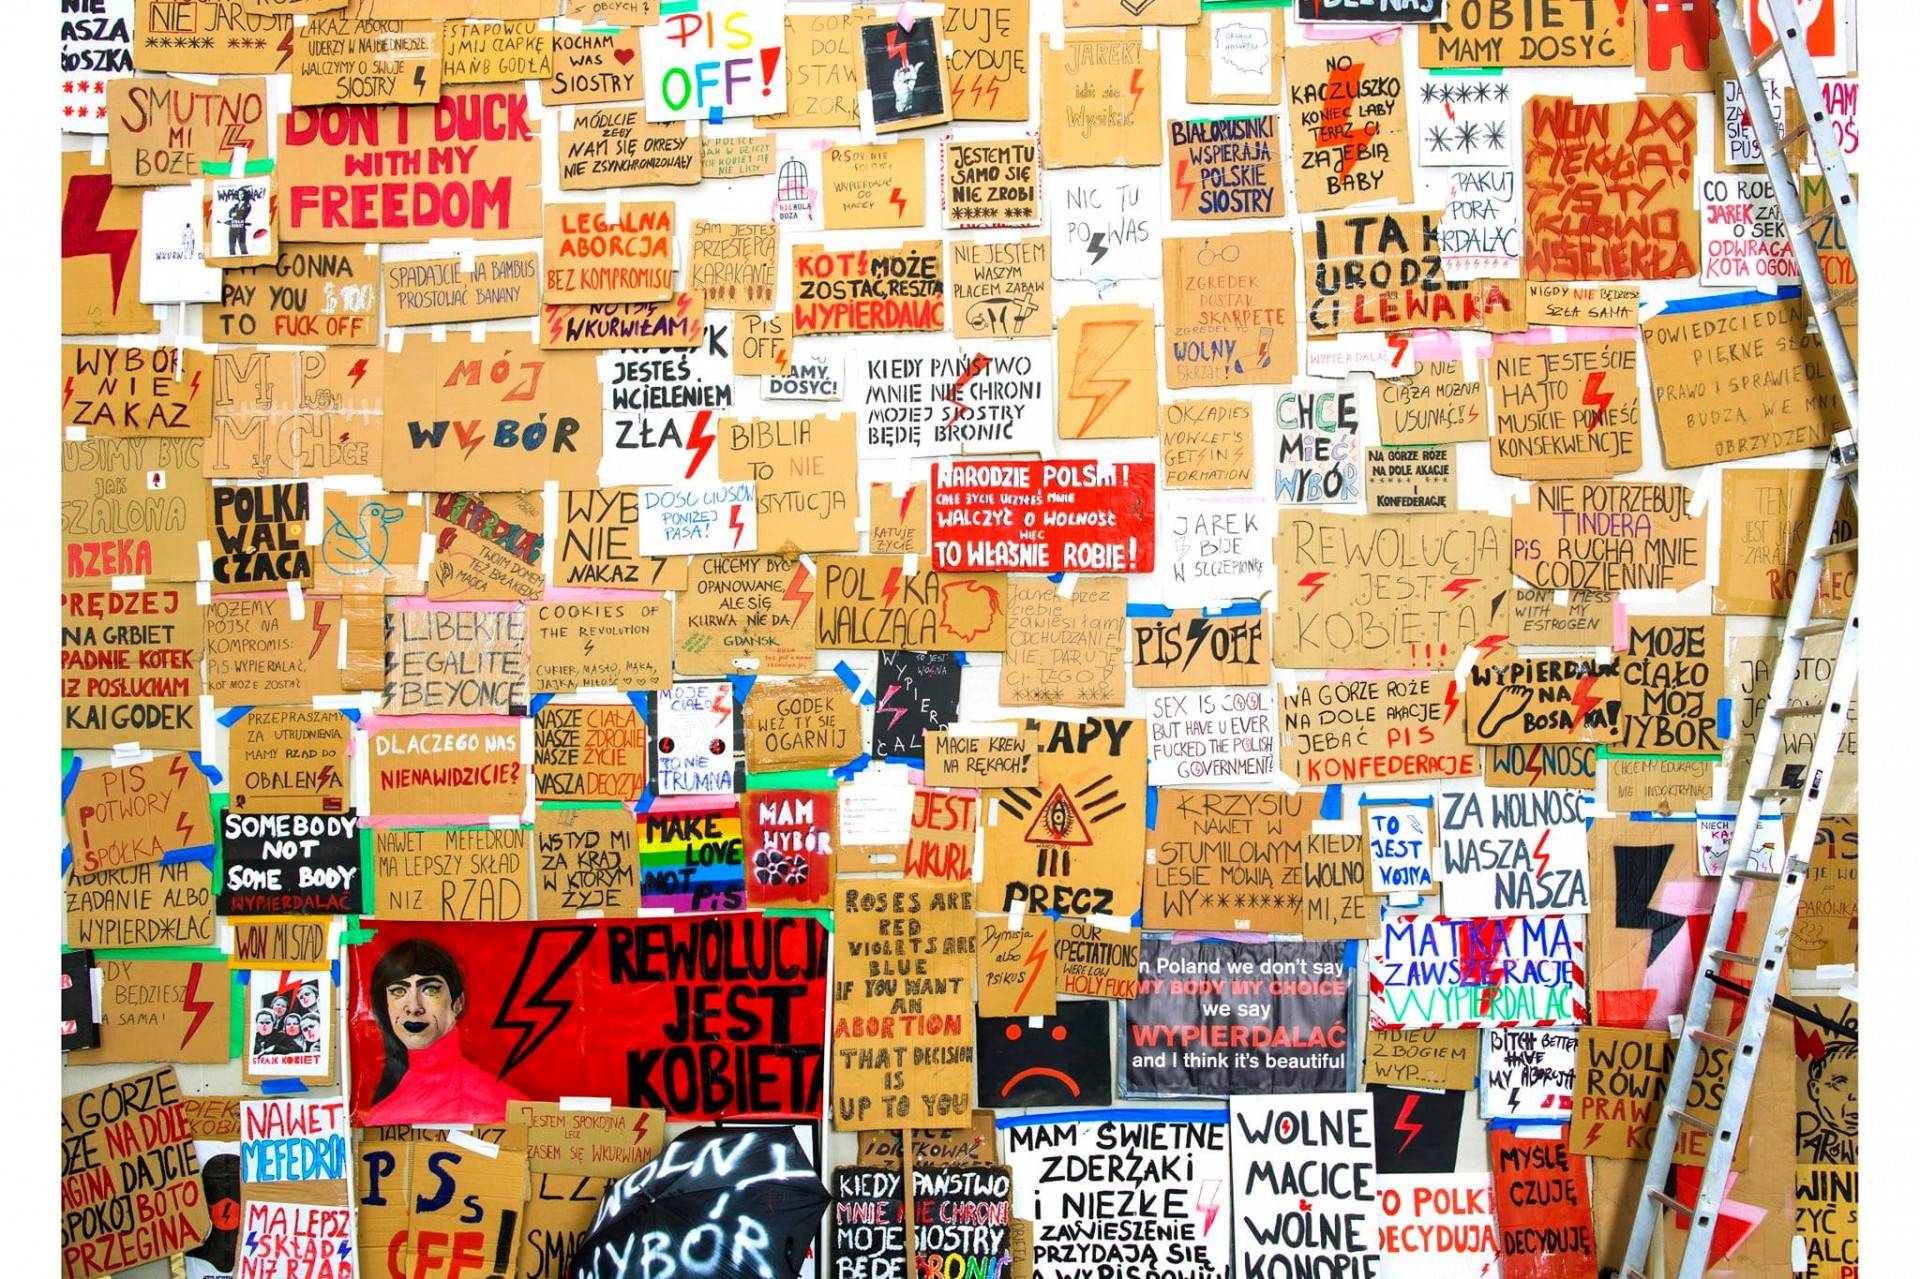 Cenzura na wystawie w Cricotece. Protest artystów